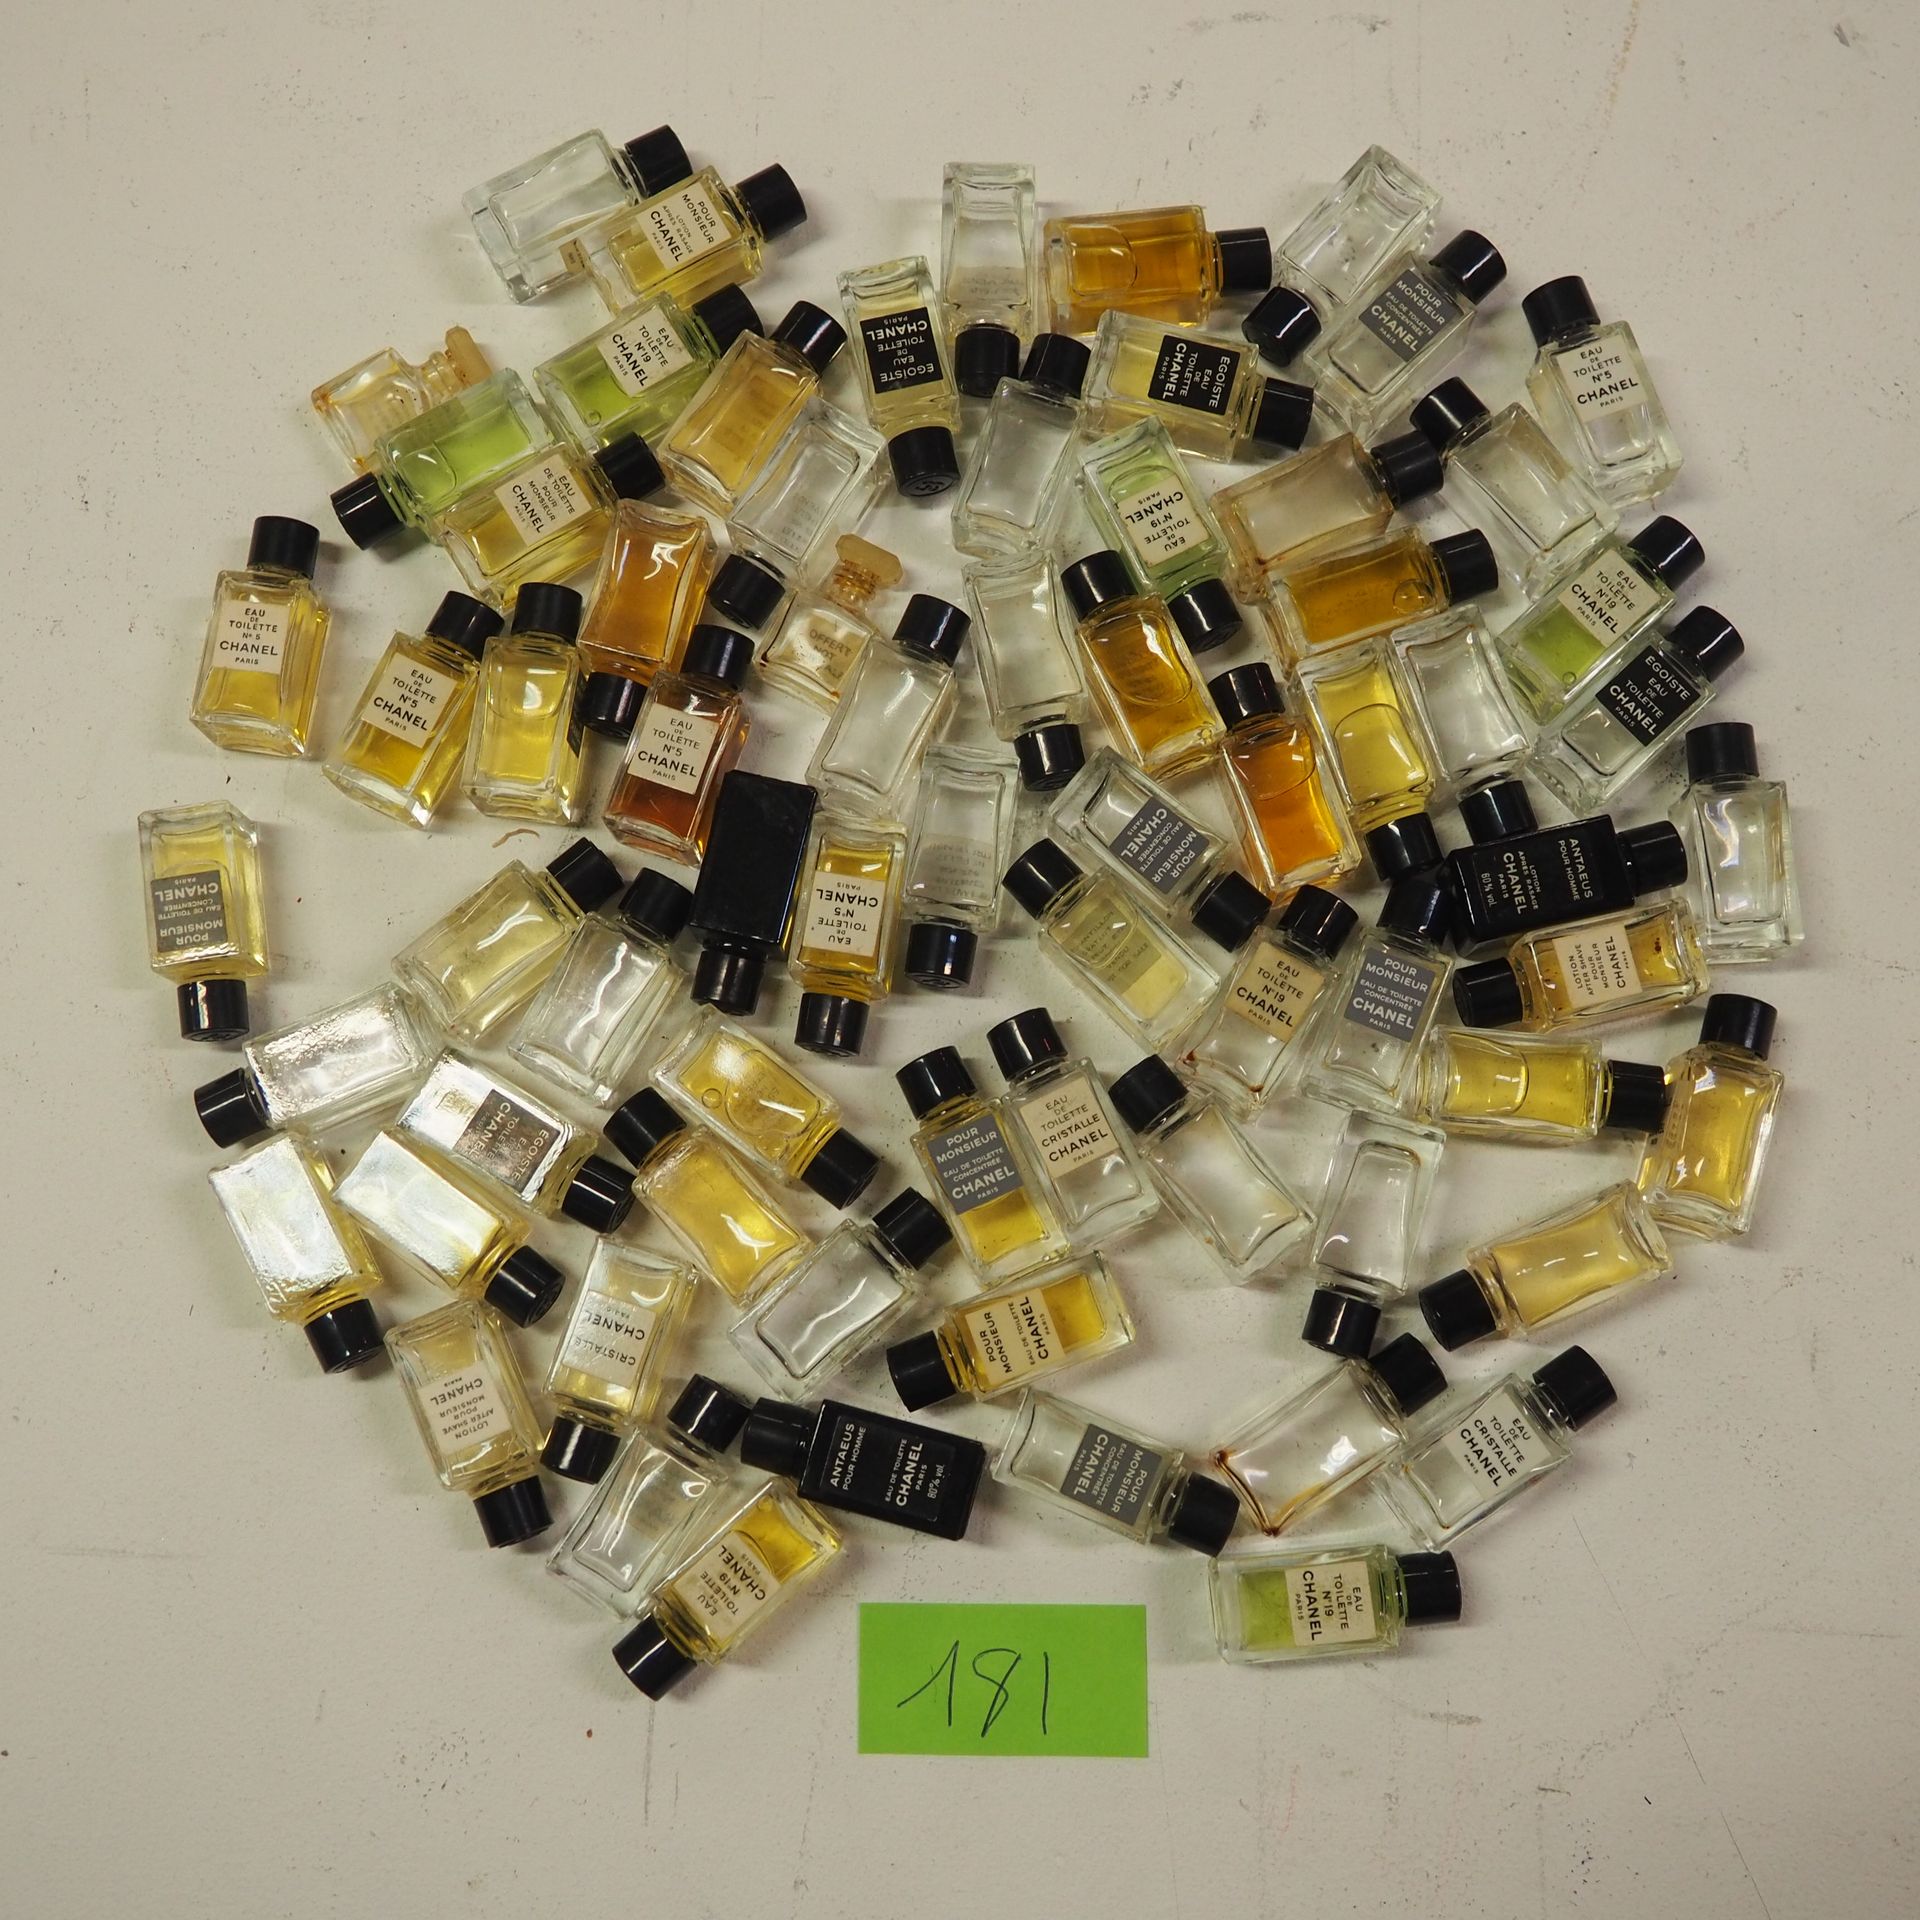 CHANEL 香奈儿：70件旧香水和香氛缩微品拍品